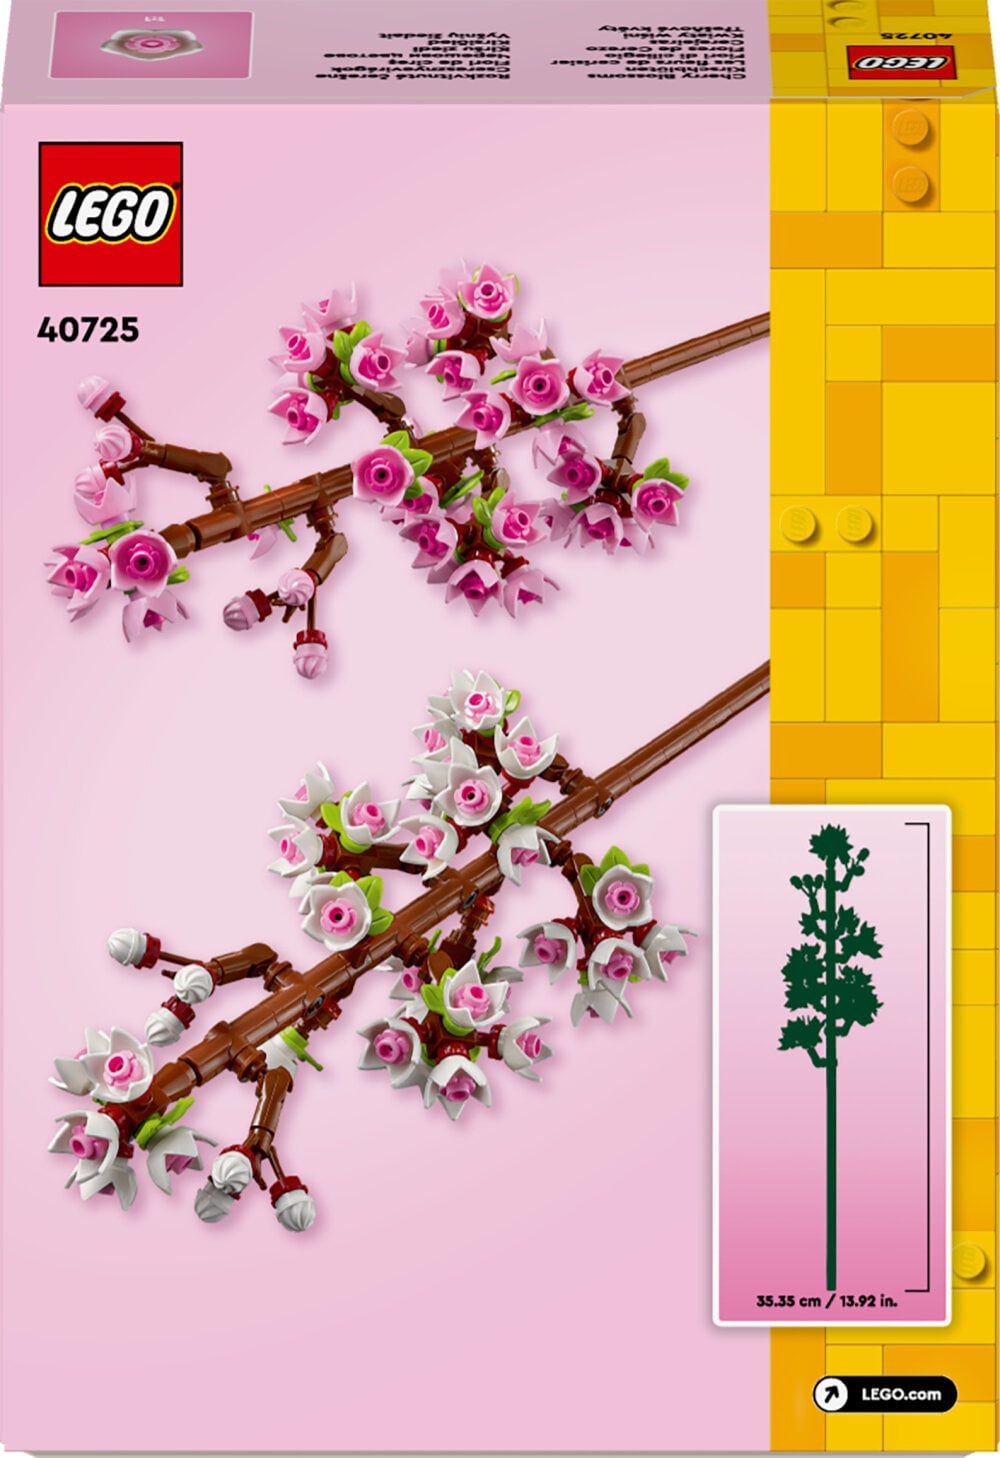 LEGO Botanical Collection - Kirschblüten 8+